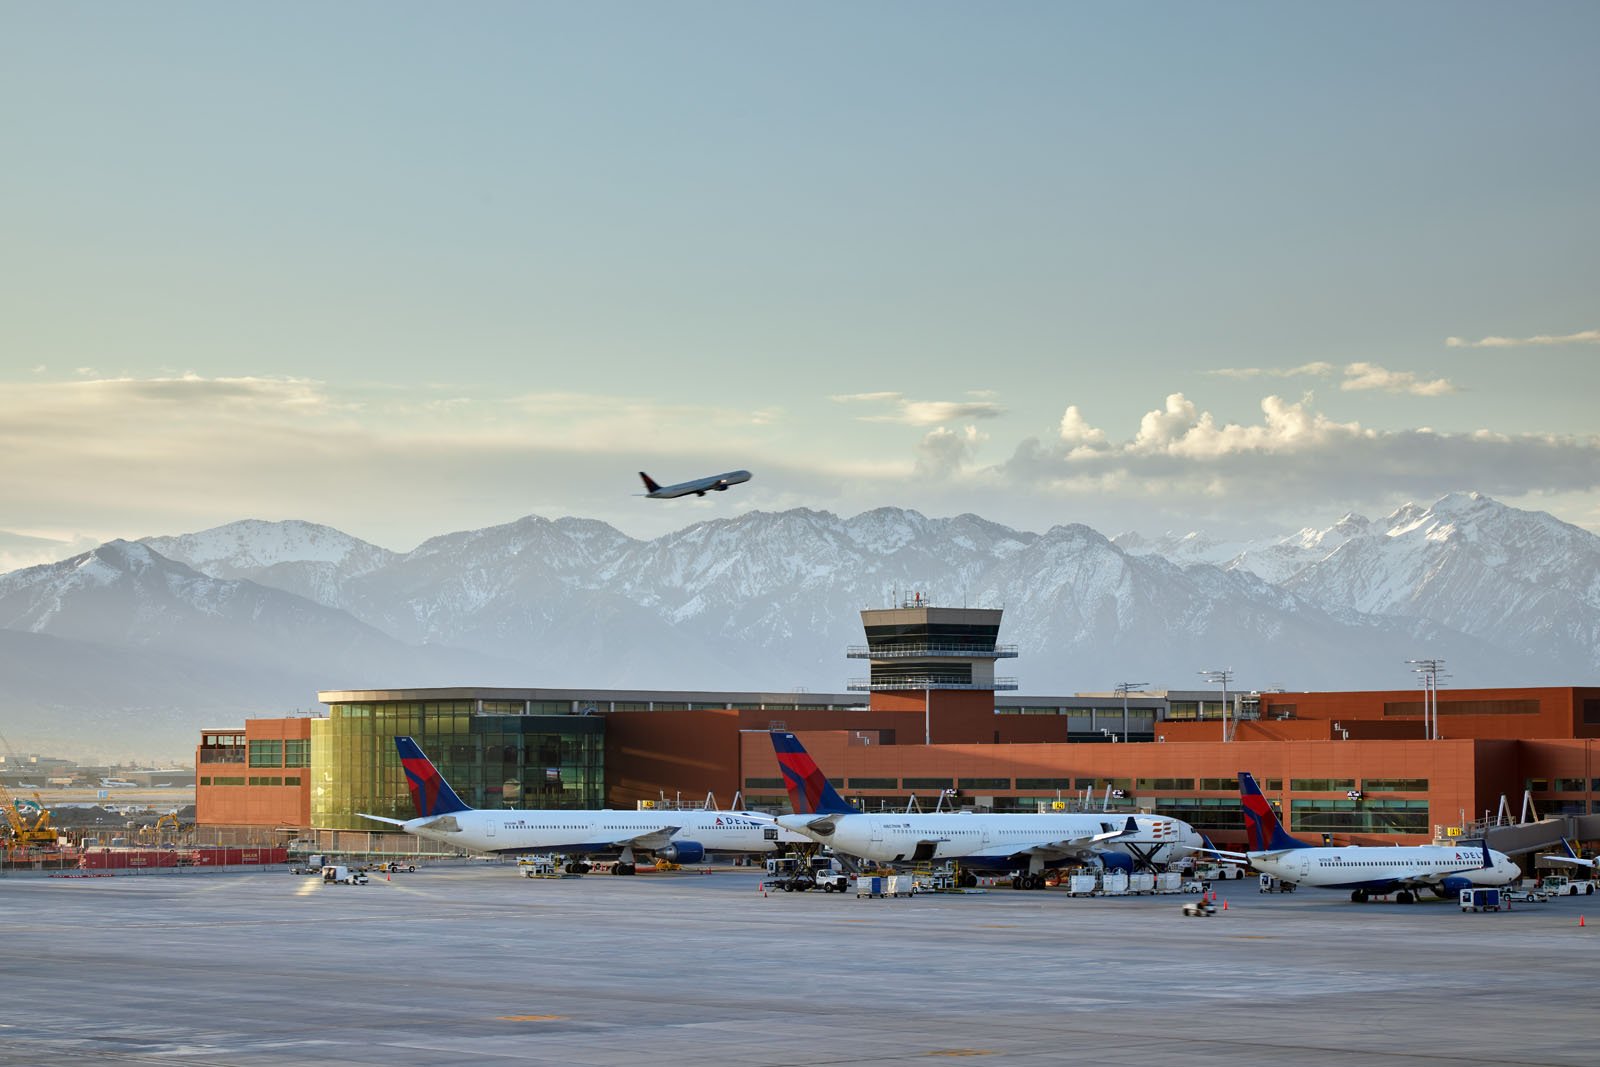 Vista del exterior del aeropuerto de Salt Lake City con varios aviones de Delta Air Lines. Foto: Bruce Damonte - Salt Lake City Airport